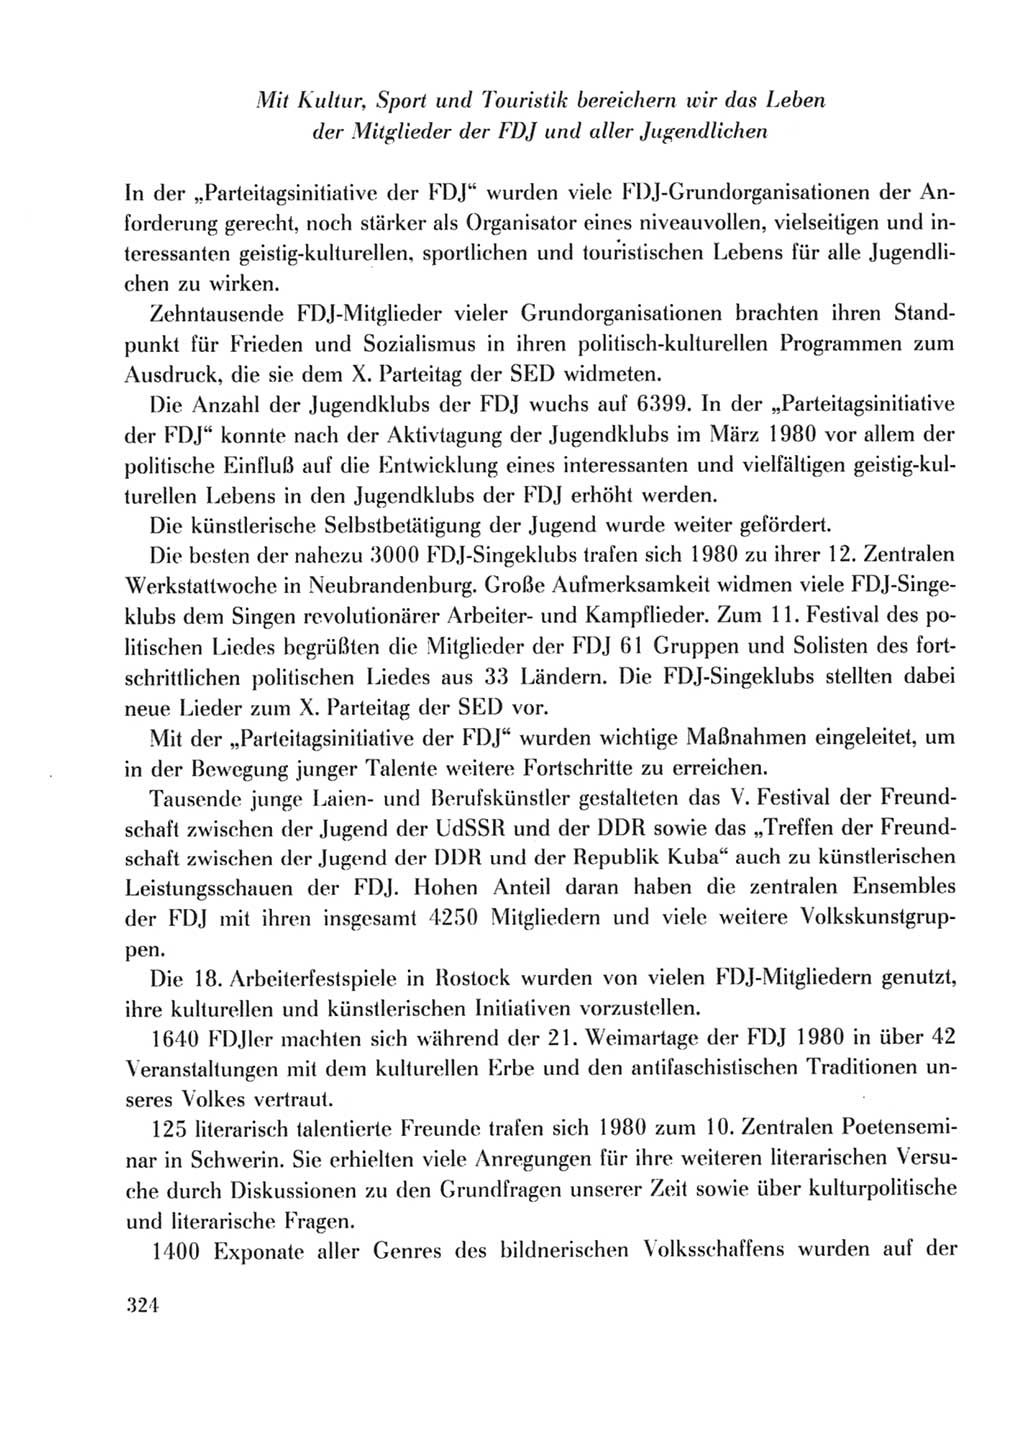 Protokoll der Verhandlungen des Ⅹ. Parteitages der Sozialistischen Einheitspartei Deutschlands (SED) [Deutsche Demokratische Republik (DDR)] 1981, Band 2, Seite 324 (Prot. Verh. Ⅹ. PT SED DDR 1981, Bd. 2, S. 324)